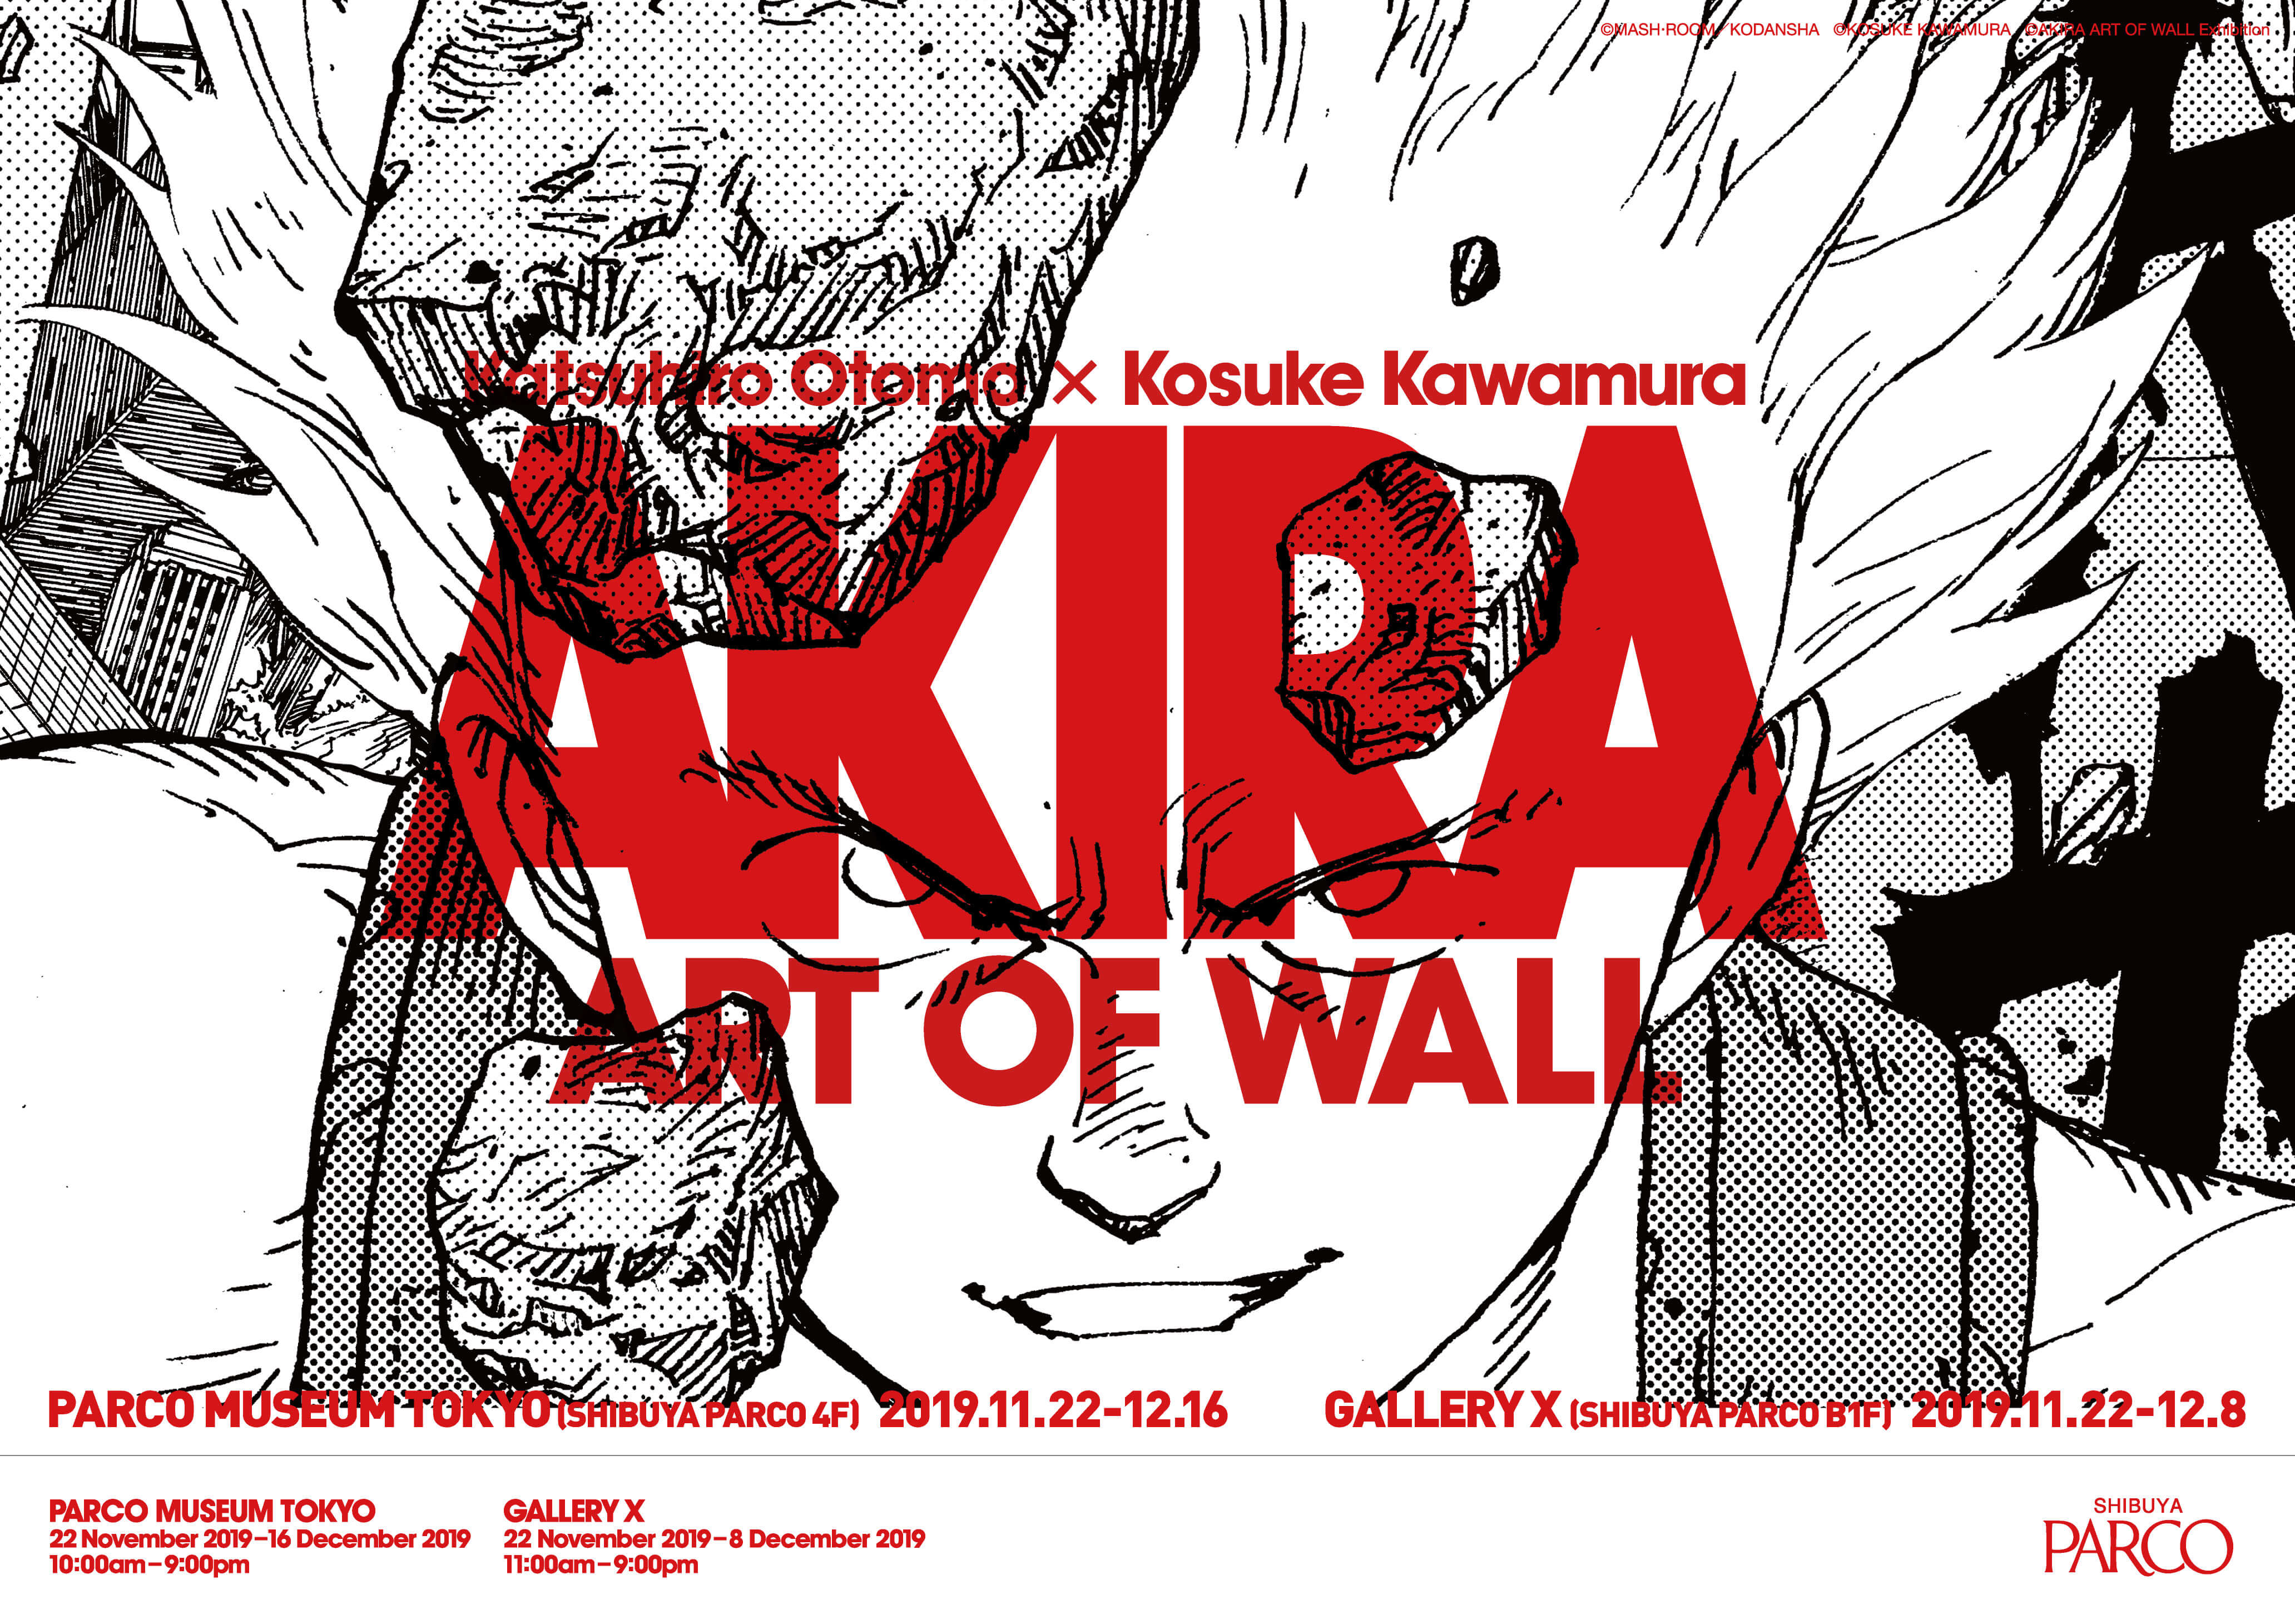 AKIRA ART OF WALL Katsuhiro Otomo x Kosuke Kawamura Japanese Art Book